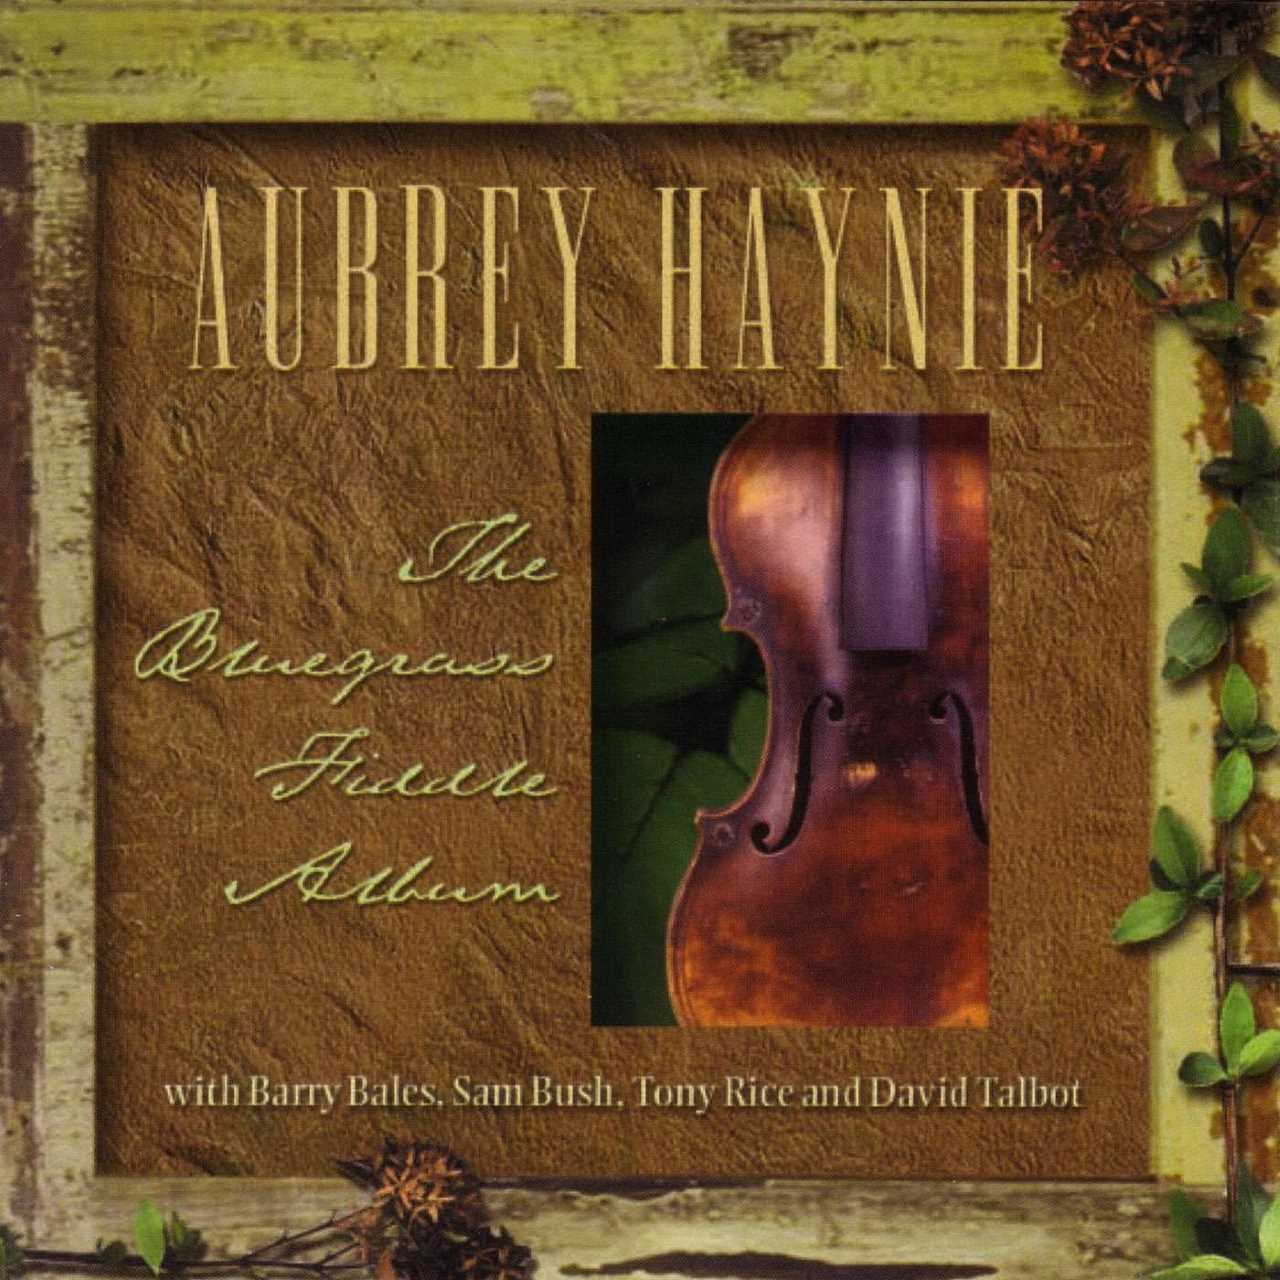 Aubrey Haynie - The Bluegrass Fiddle Album cover album